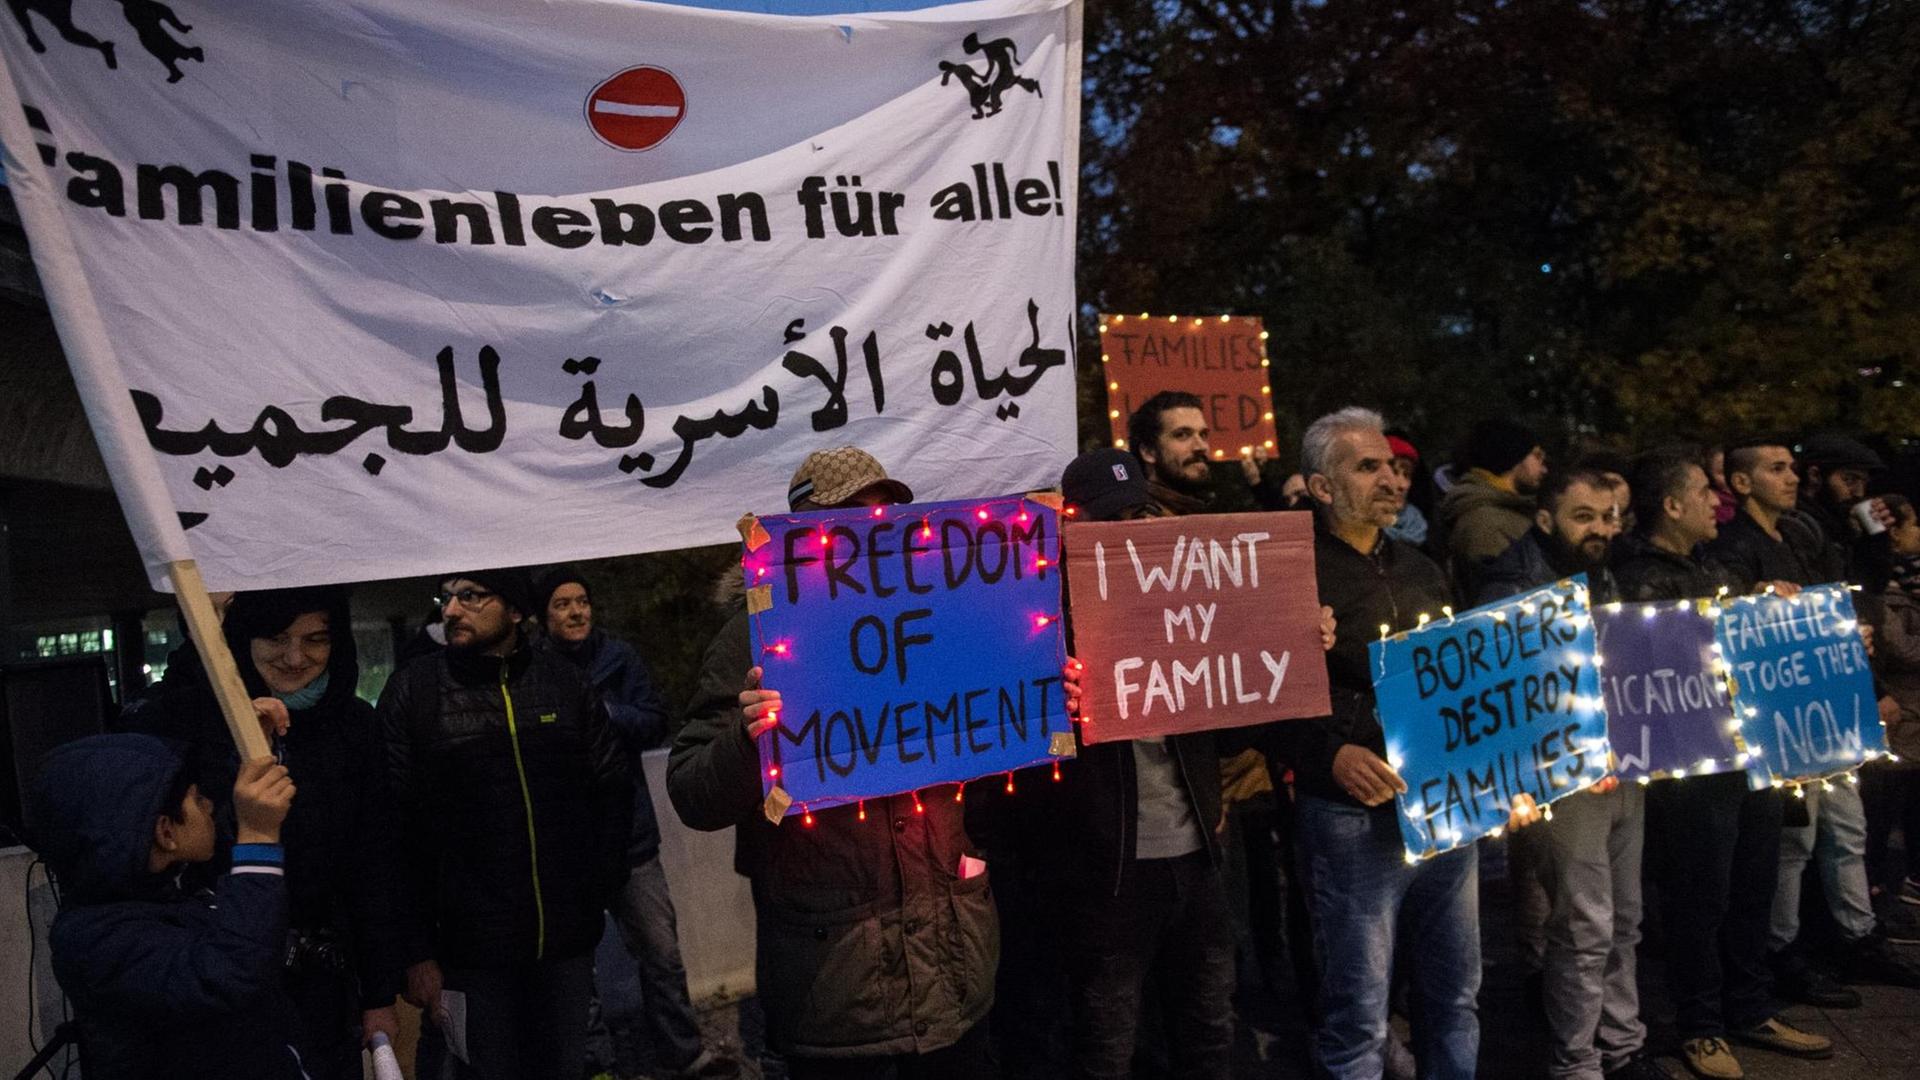 Flüchtlinge demonstrieren vor dem Innenministerium in Berlin und fordern den Familiennachzug.